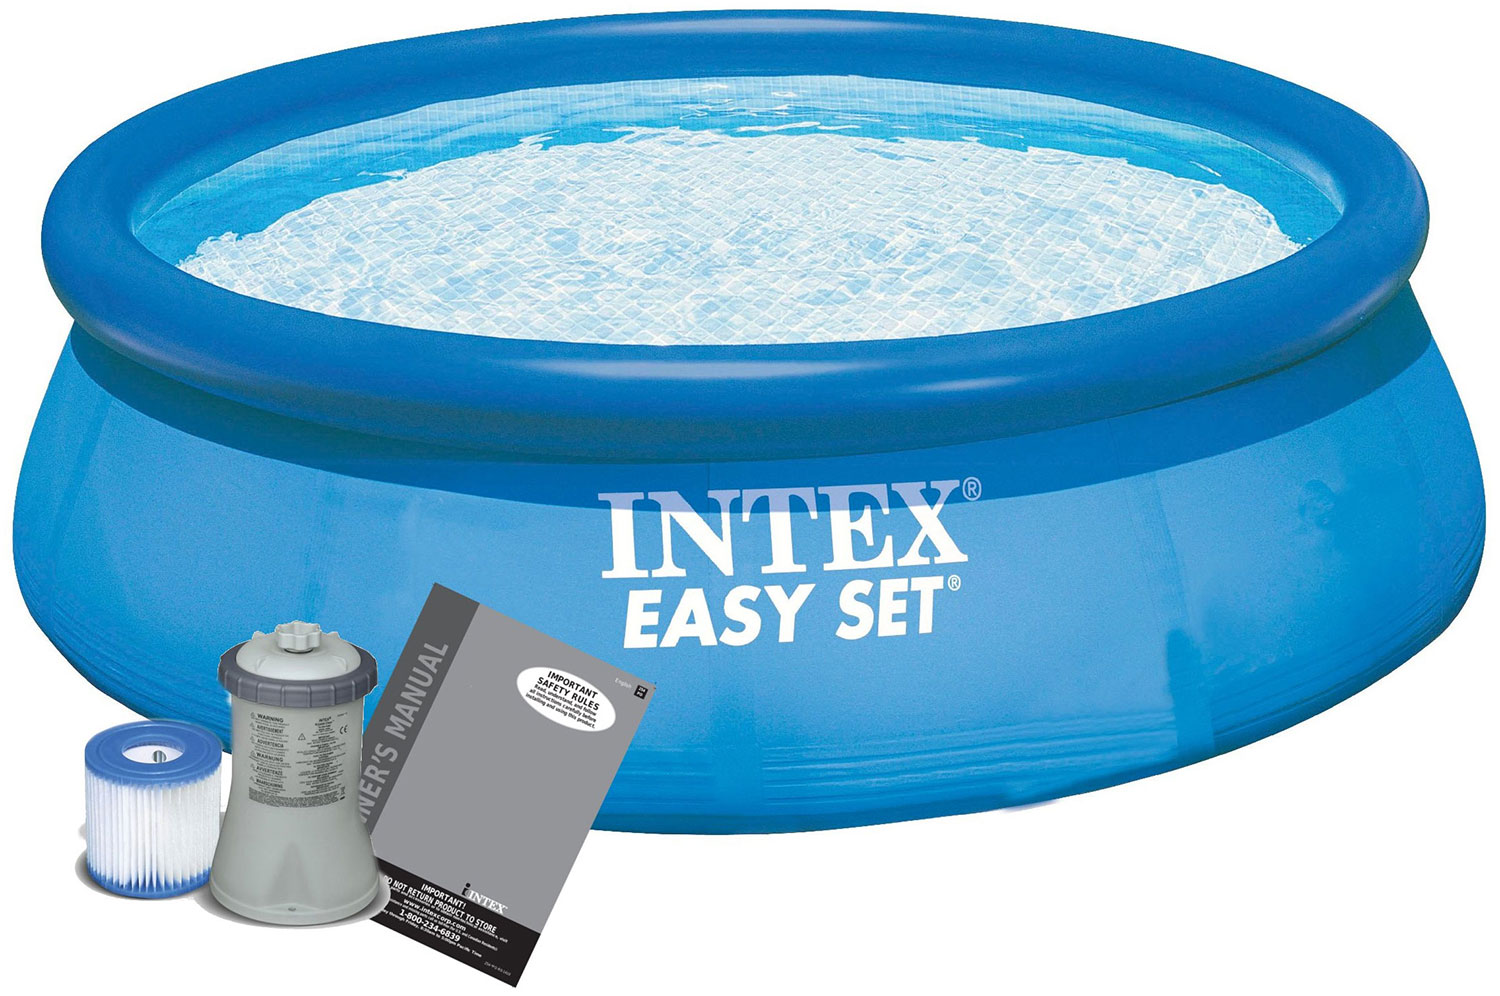 Надувной бассейн Intex Изи сет 396х84 см 28142NP бассейны intex бассейн easy set с фильтром 396х84 см